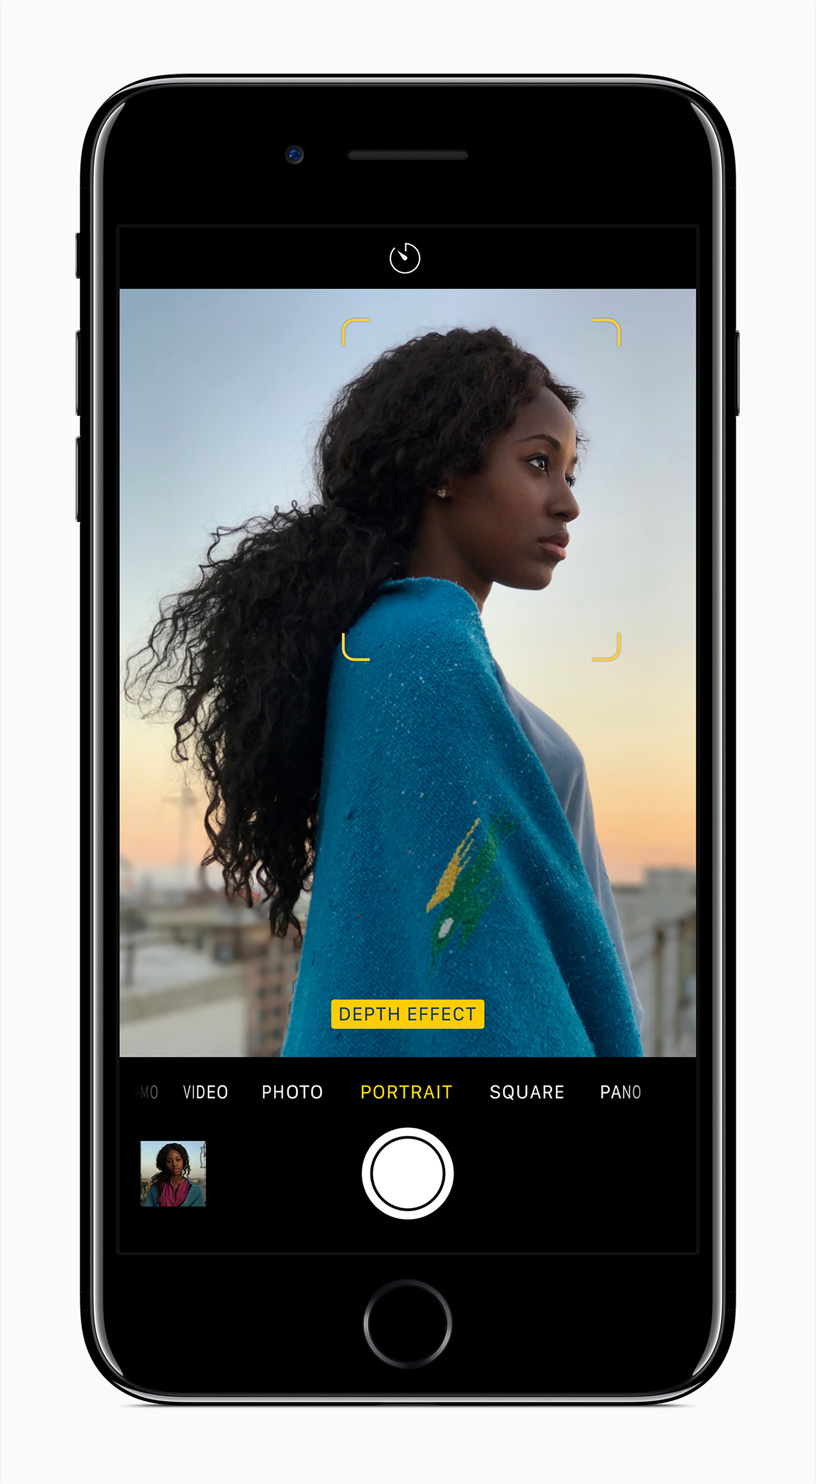 Chế độ chụp chân dung đã có trên iPhone 7 Plus với iOS 10.1 của Apple sẽ giúp bạn tạo nên những bức ảnh đẹp và chân thật hơn bao giờ hết. Đặc biệt với thành phần làm mờ nền ảnh tuyệt vời, bạn sẽ có một bức ảnh tuyệt đẹp cho riêng mình. 